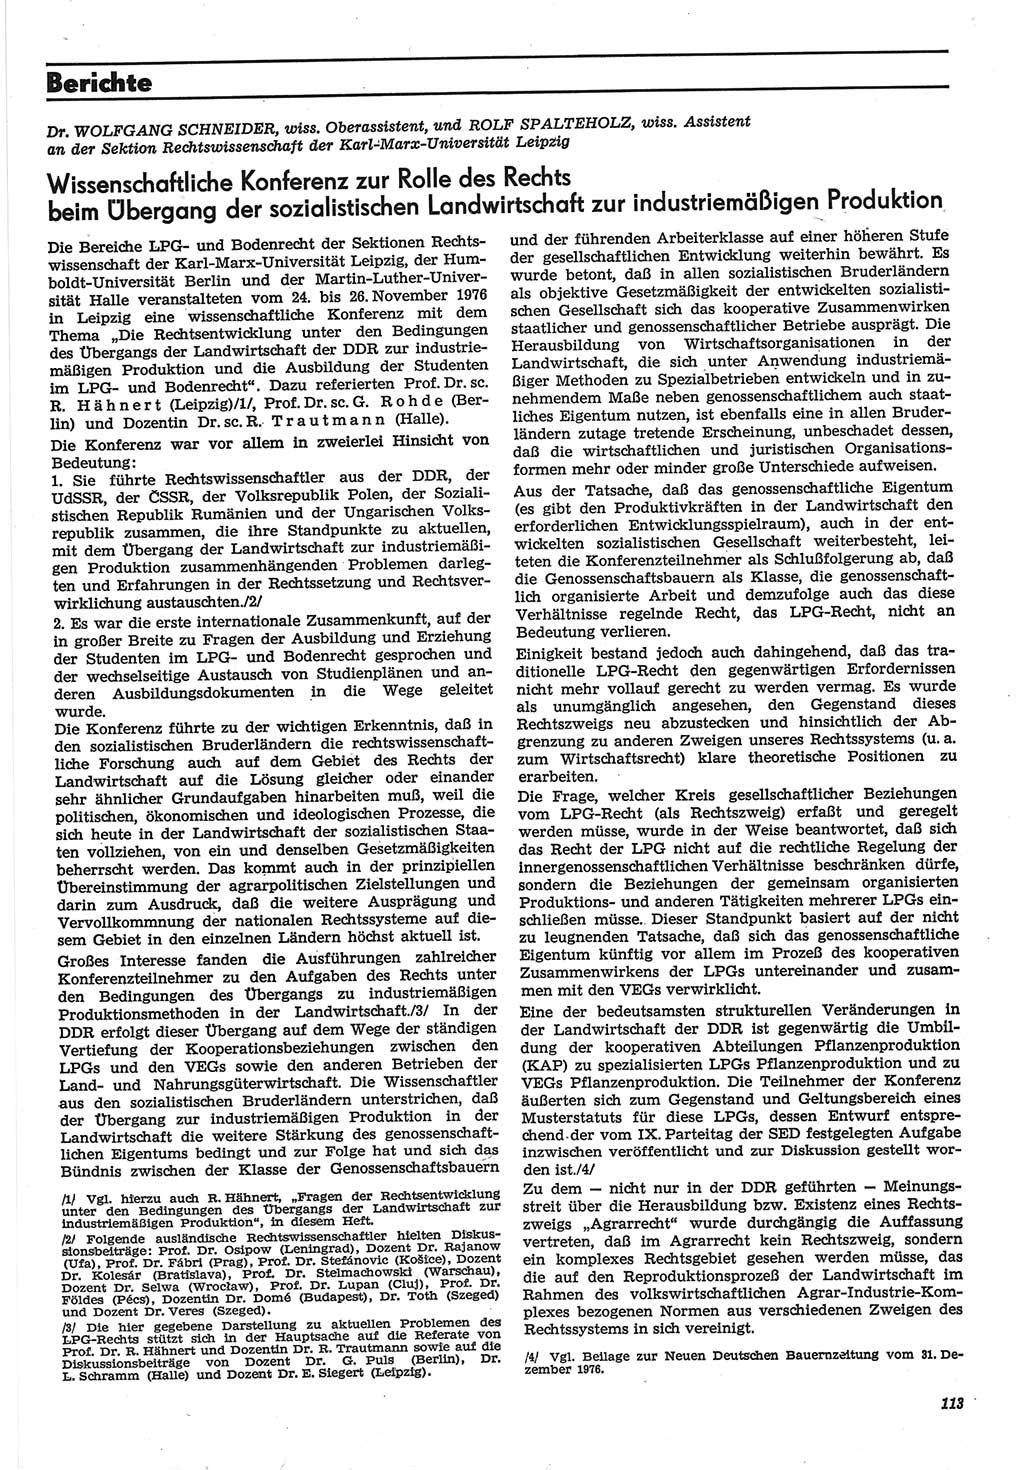 Neue Justiz (NJ), Zeitschrift für Recht und Rechtswissenschaft-Zeitschrift, sozialistisches Recht und Gesetzlichkeit, 31. Jahrgang 1977, Seite 113 (NJ DDR 1977, S. 113)